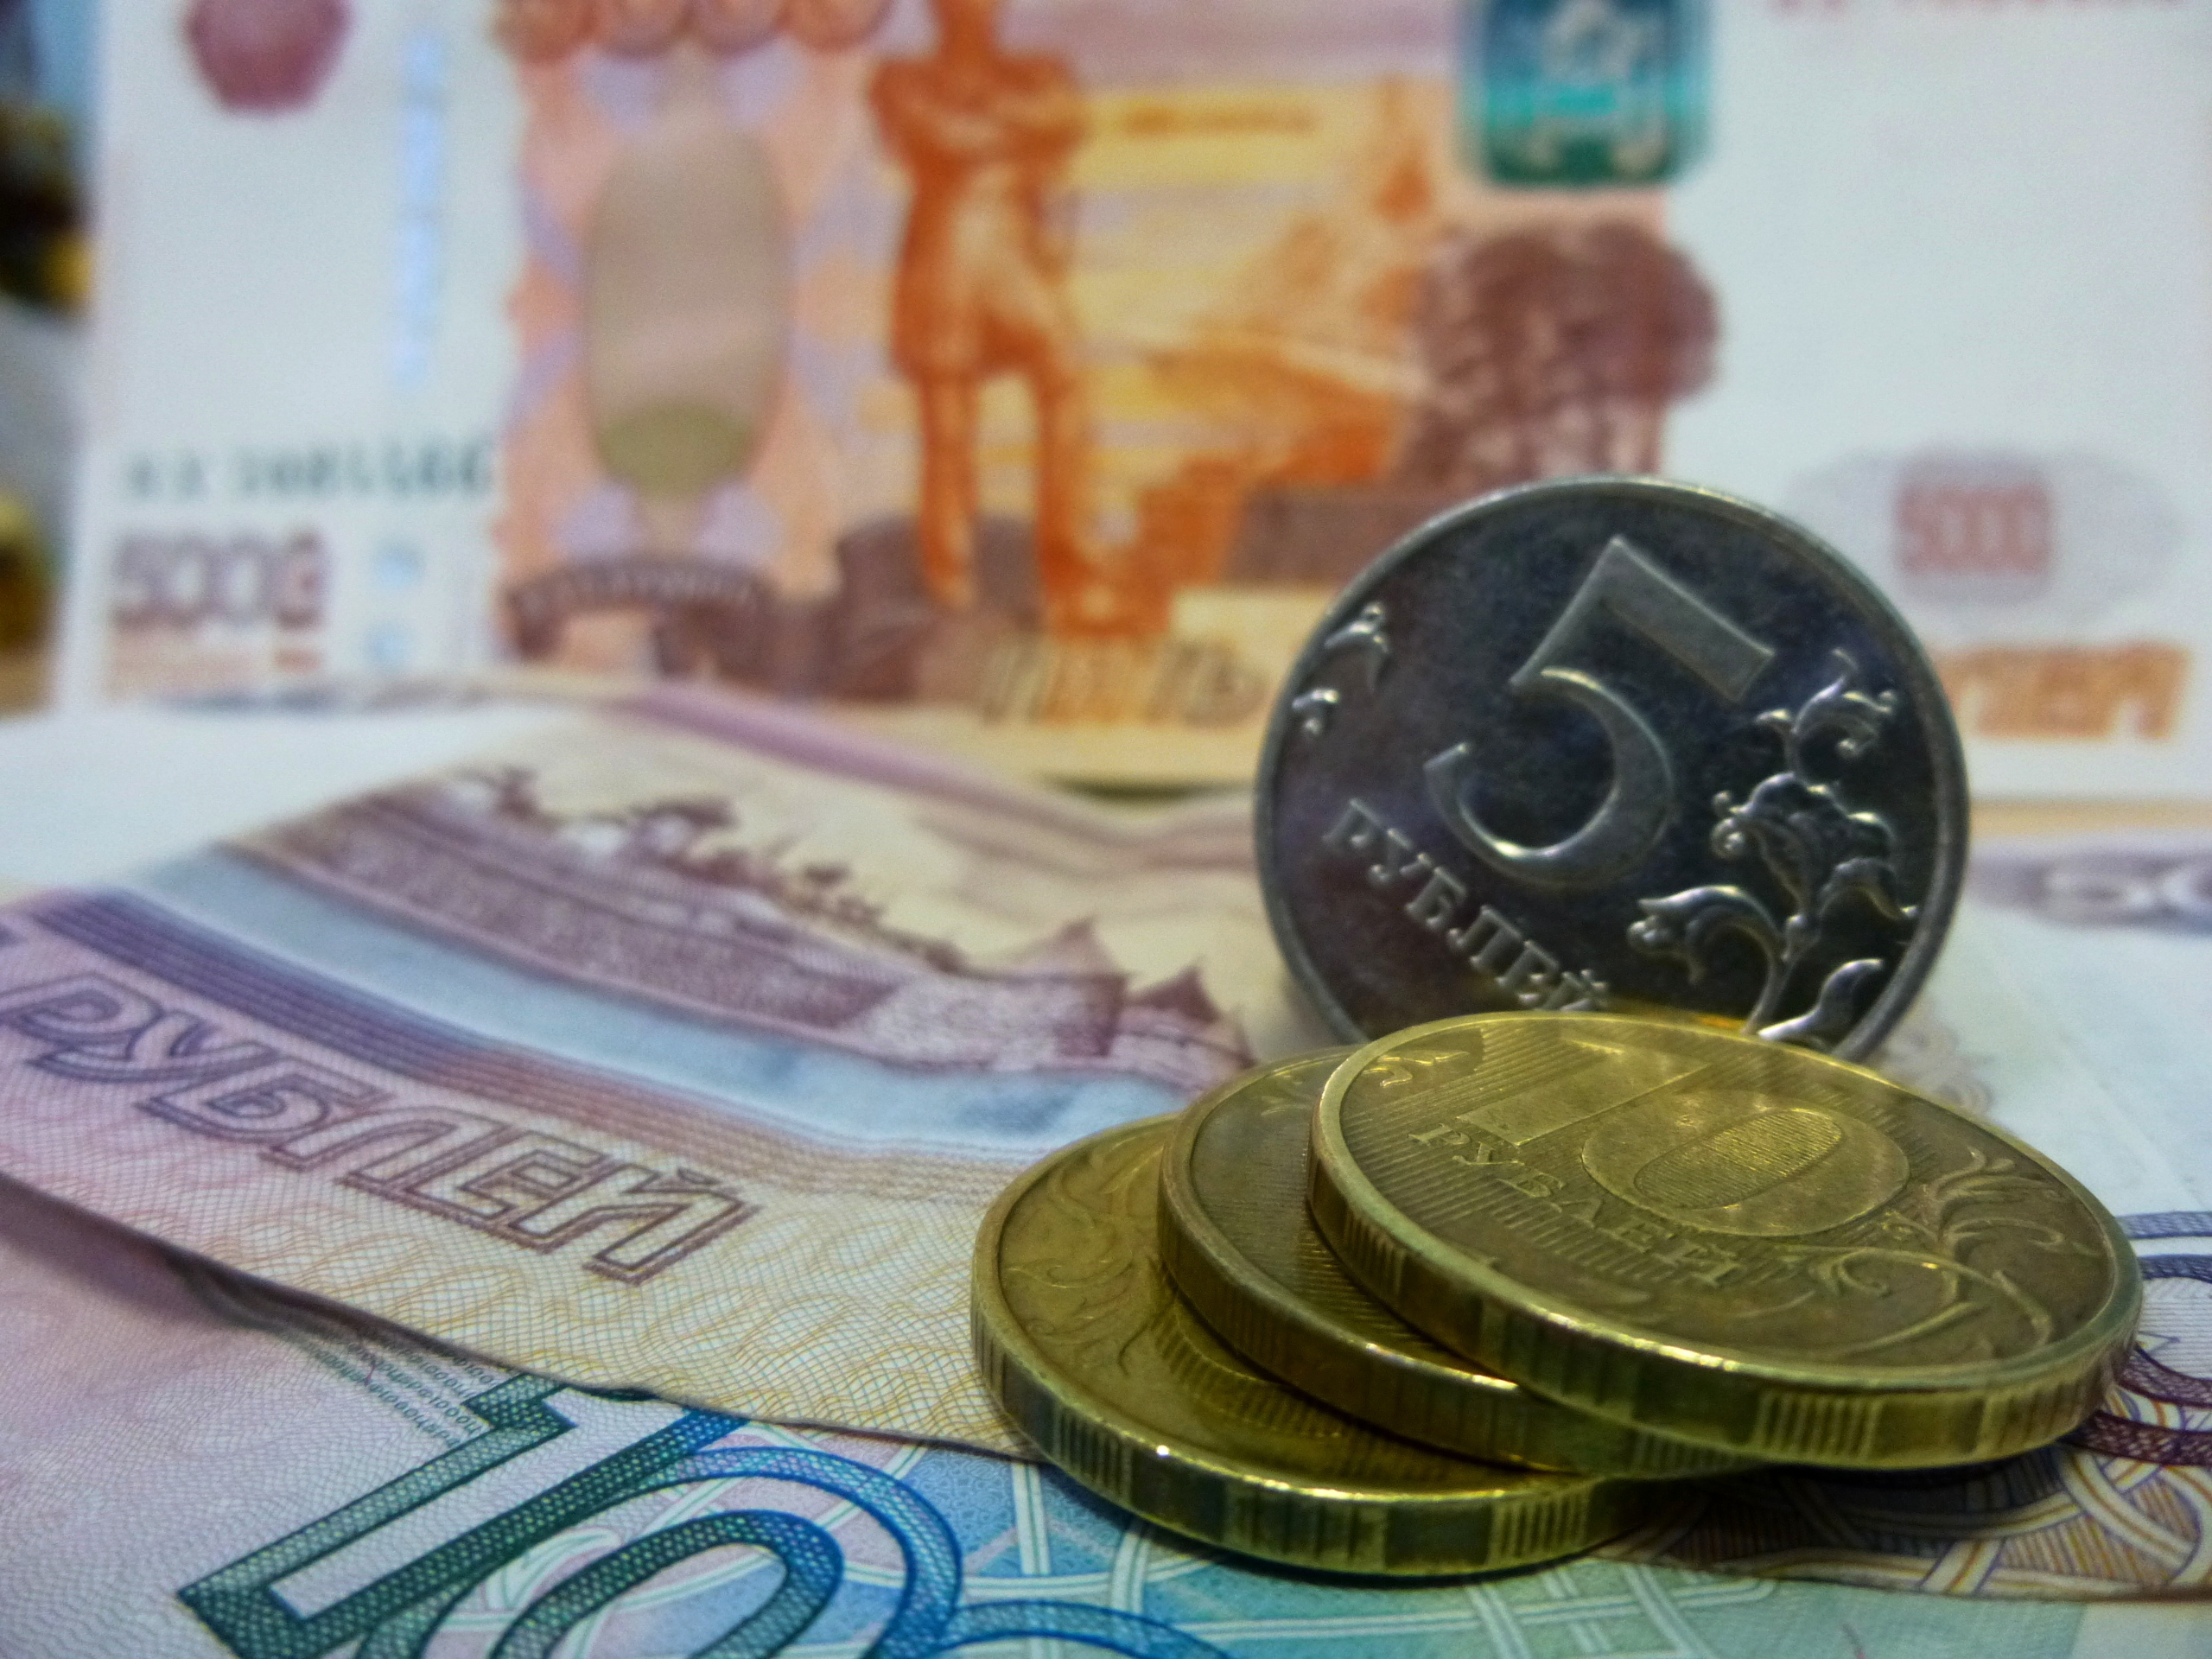 Строительная компания в Ижевске задолжала работникам 1,5 млн рублей